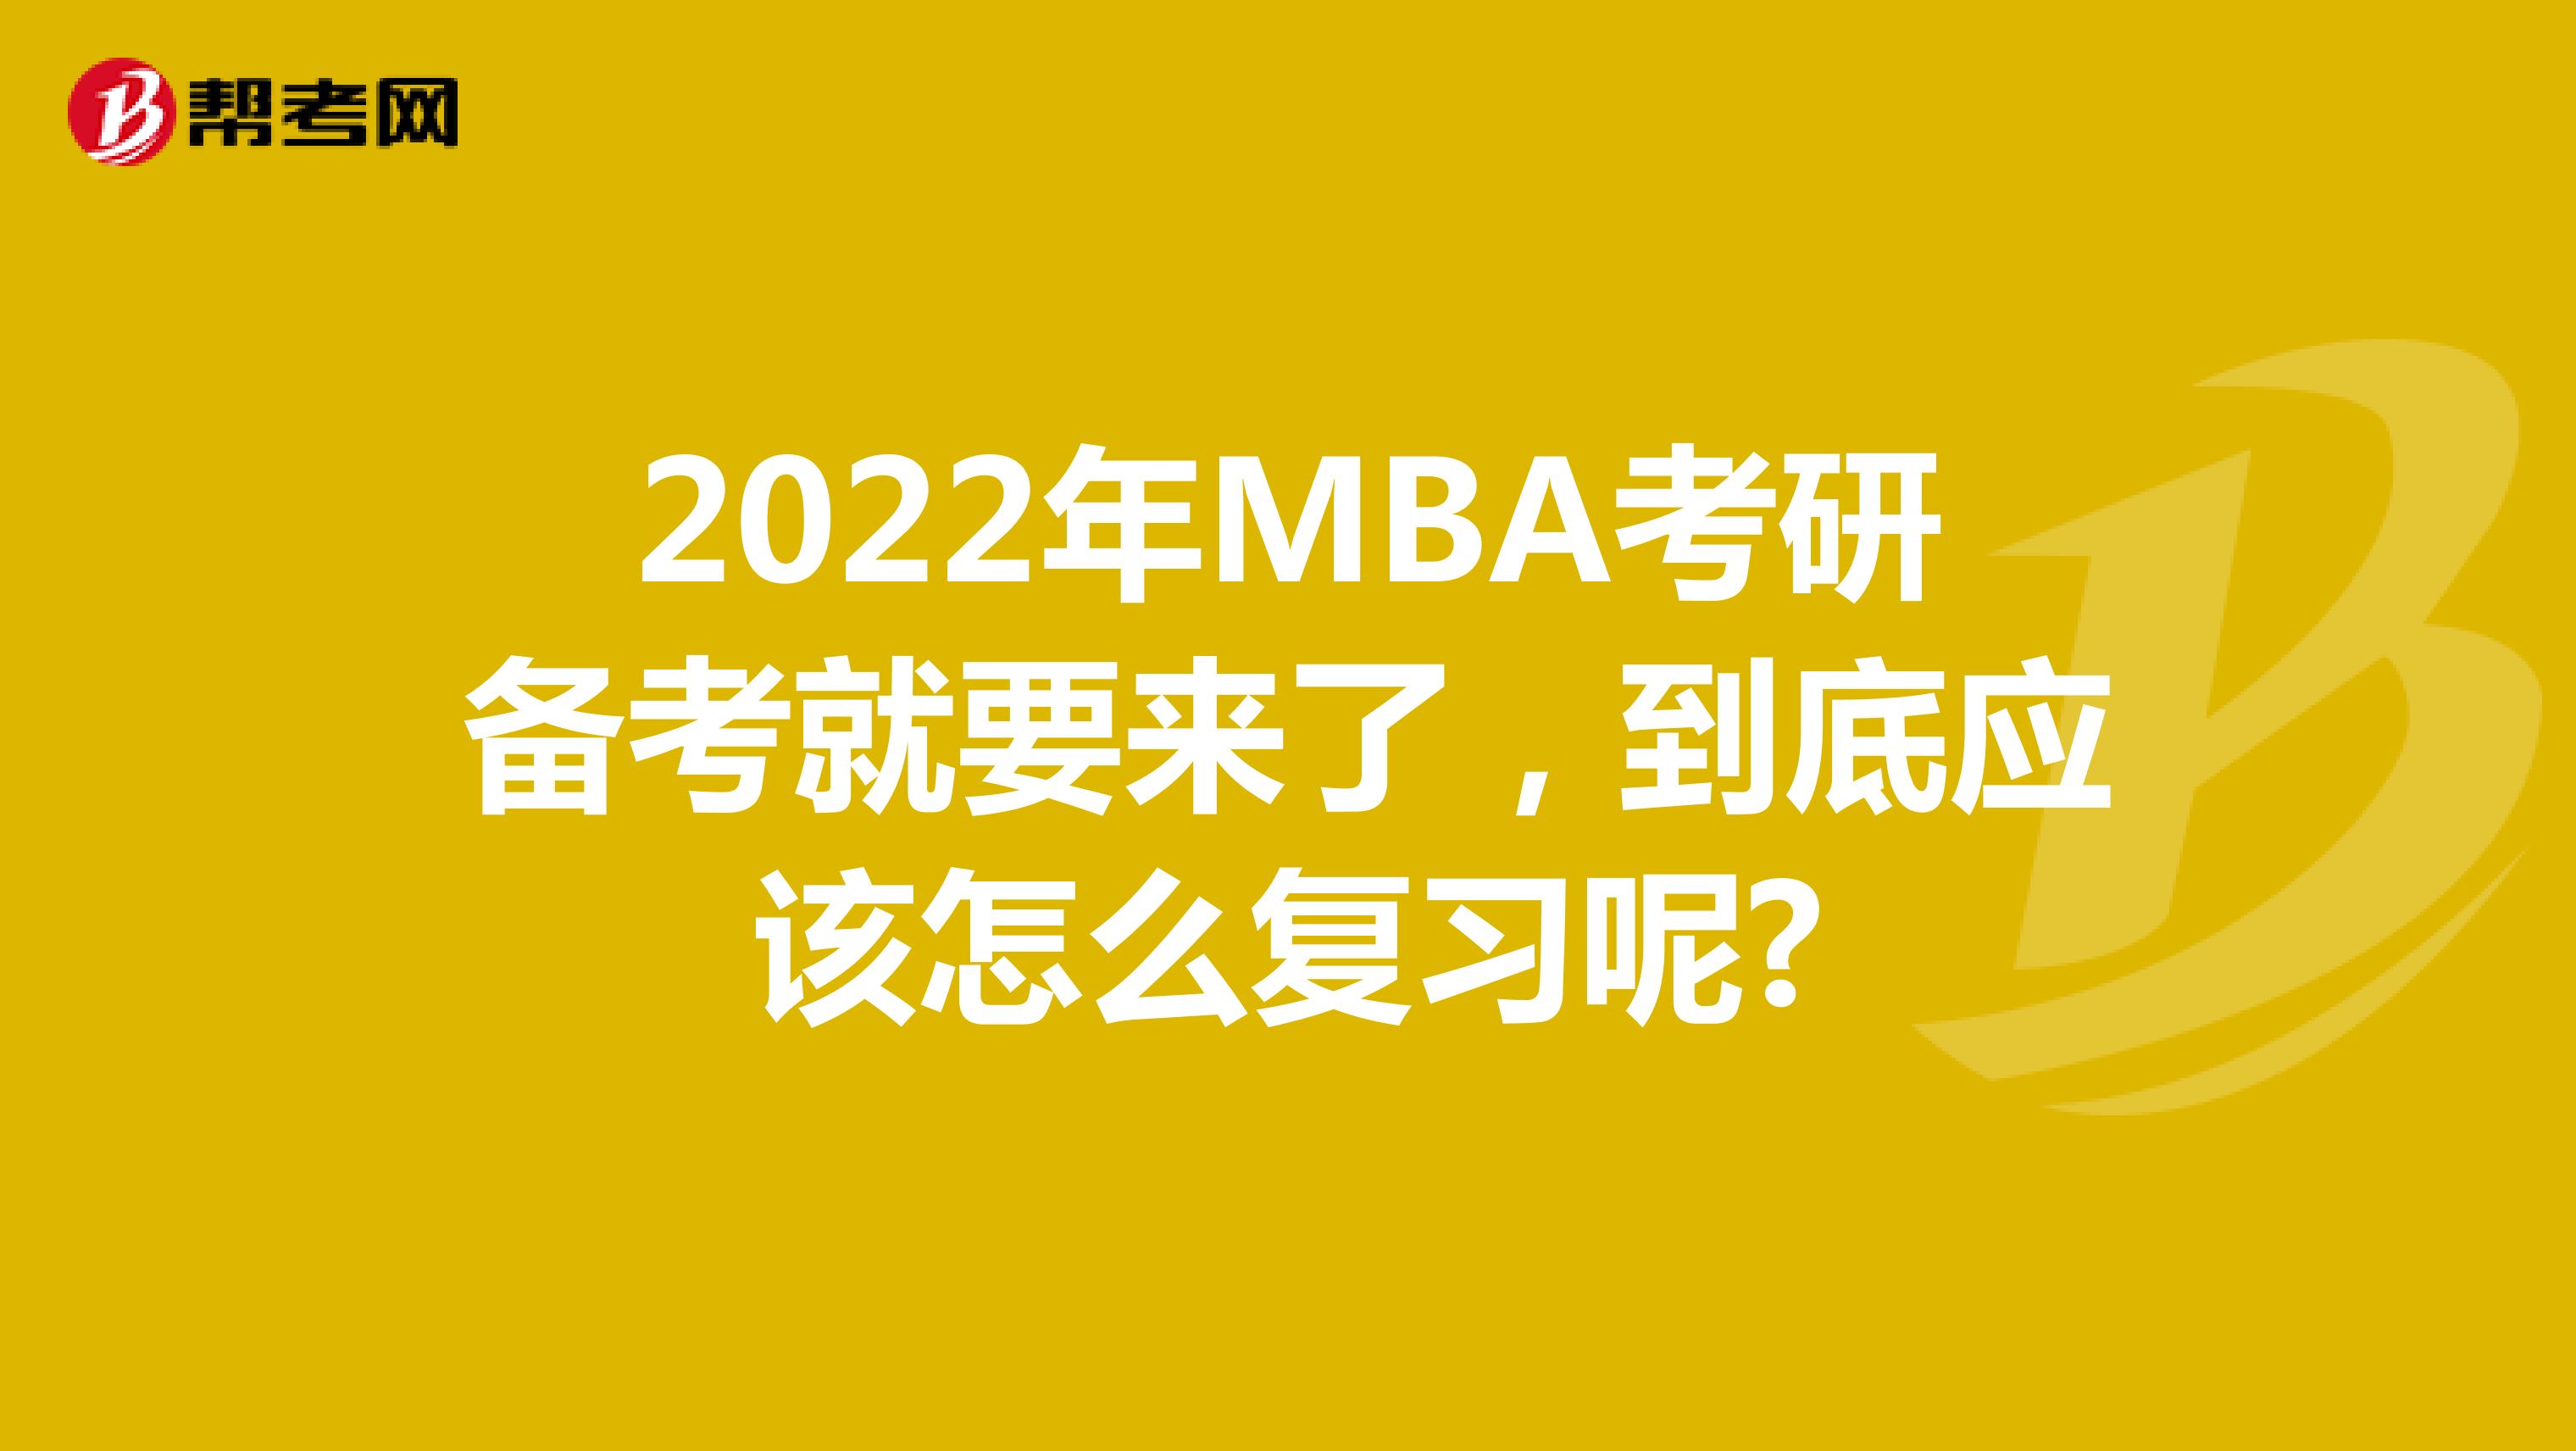 2022年MBA考研备考就要来了，到底应该怎么复习呢?